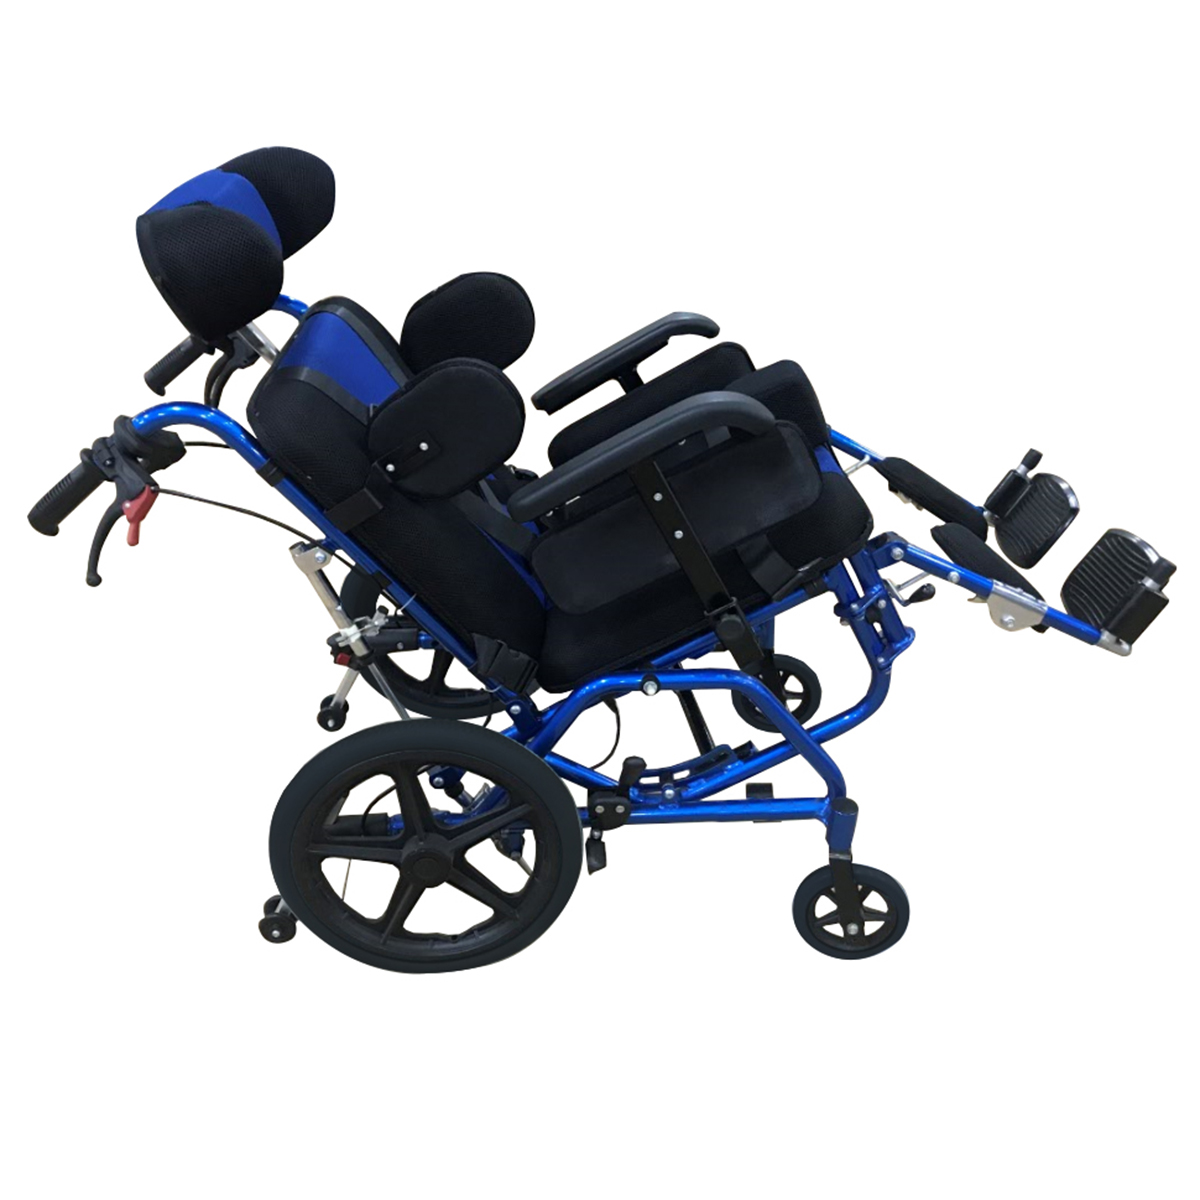 Αναπηρικό αμαξίδιο παιδικό αλουμινίου 42 cm AZURA ΙΙ 0811982